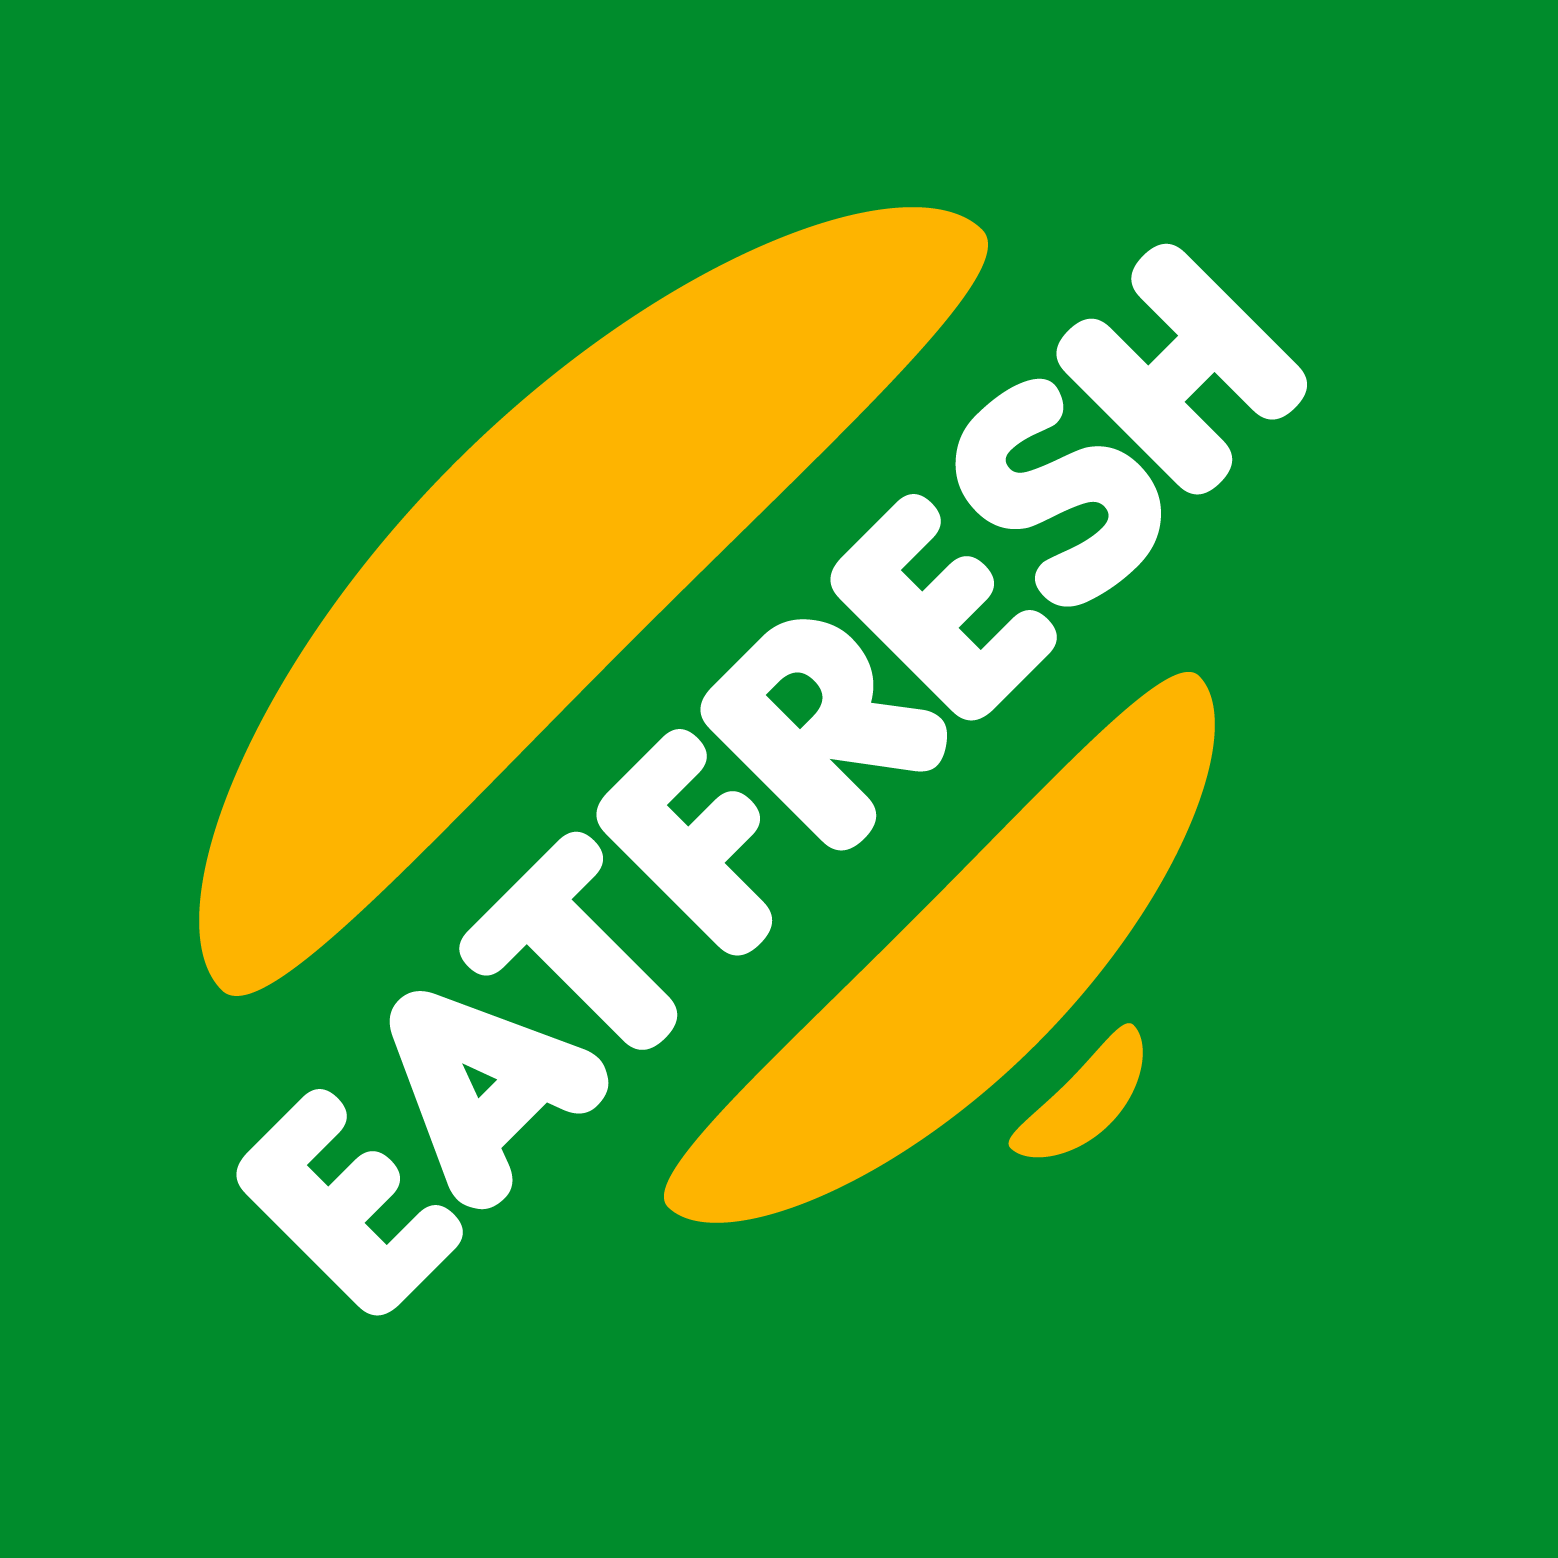 EatFresh